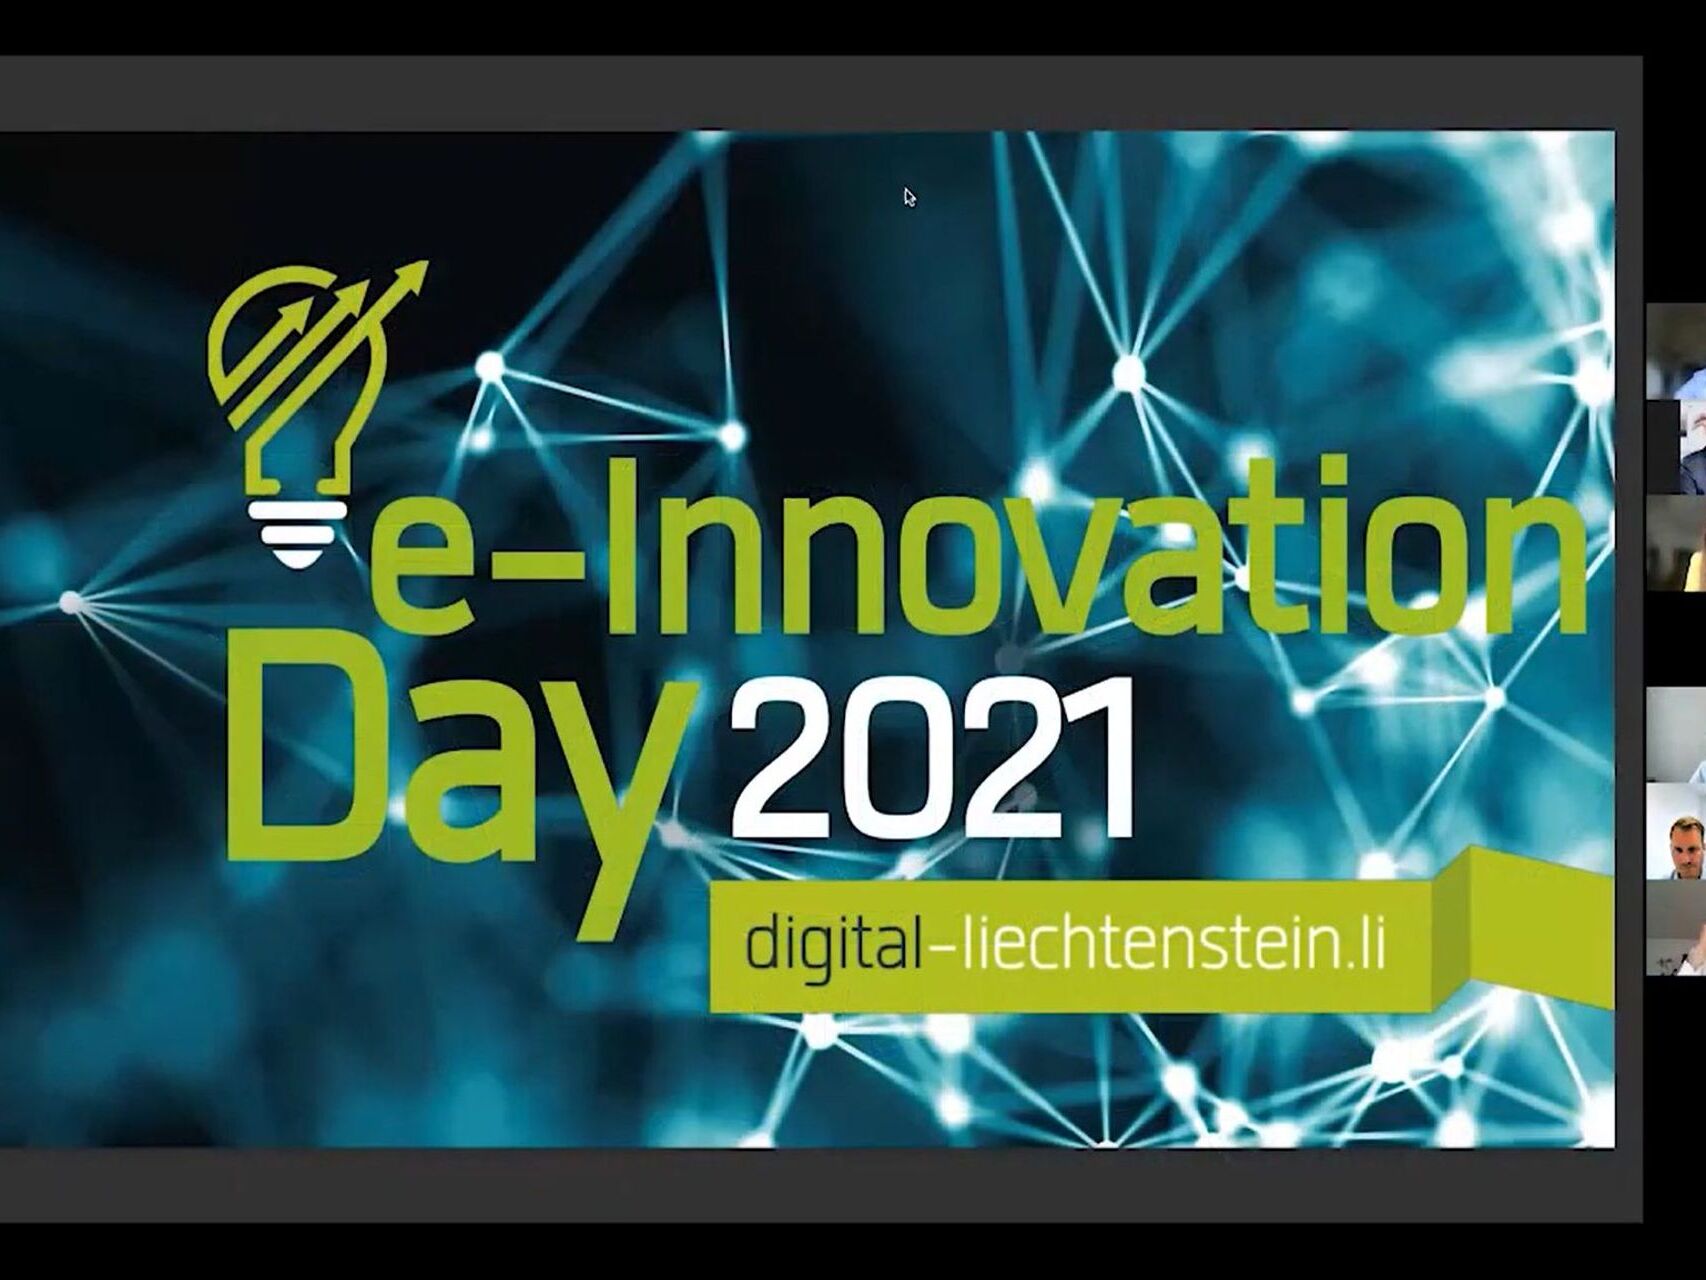 Цахим инновацийн өдөр: Лихтенштейн 2021 'e-Innovation' вэбинарын эхний хүрээ